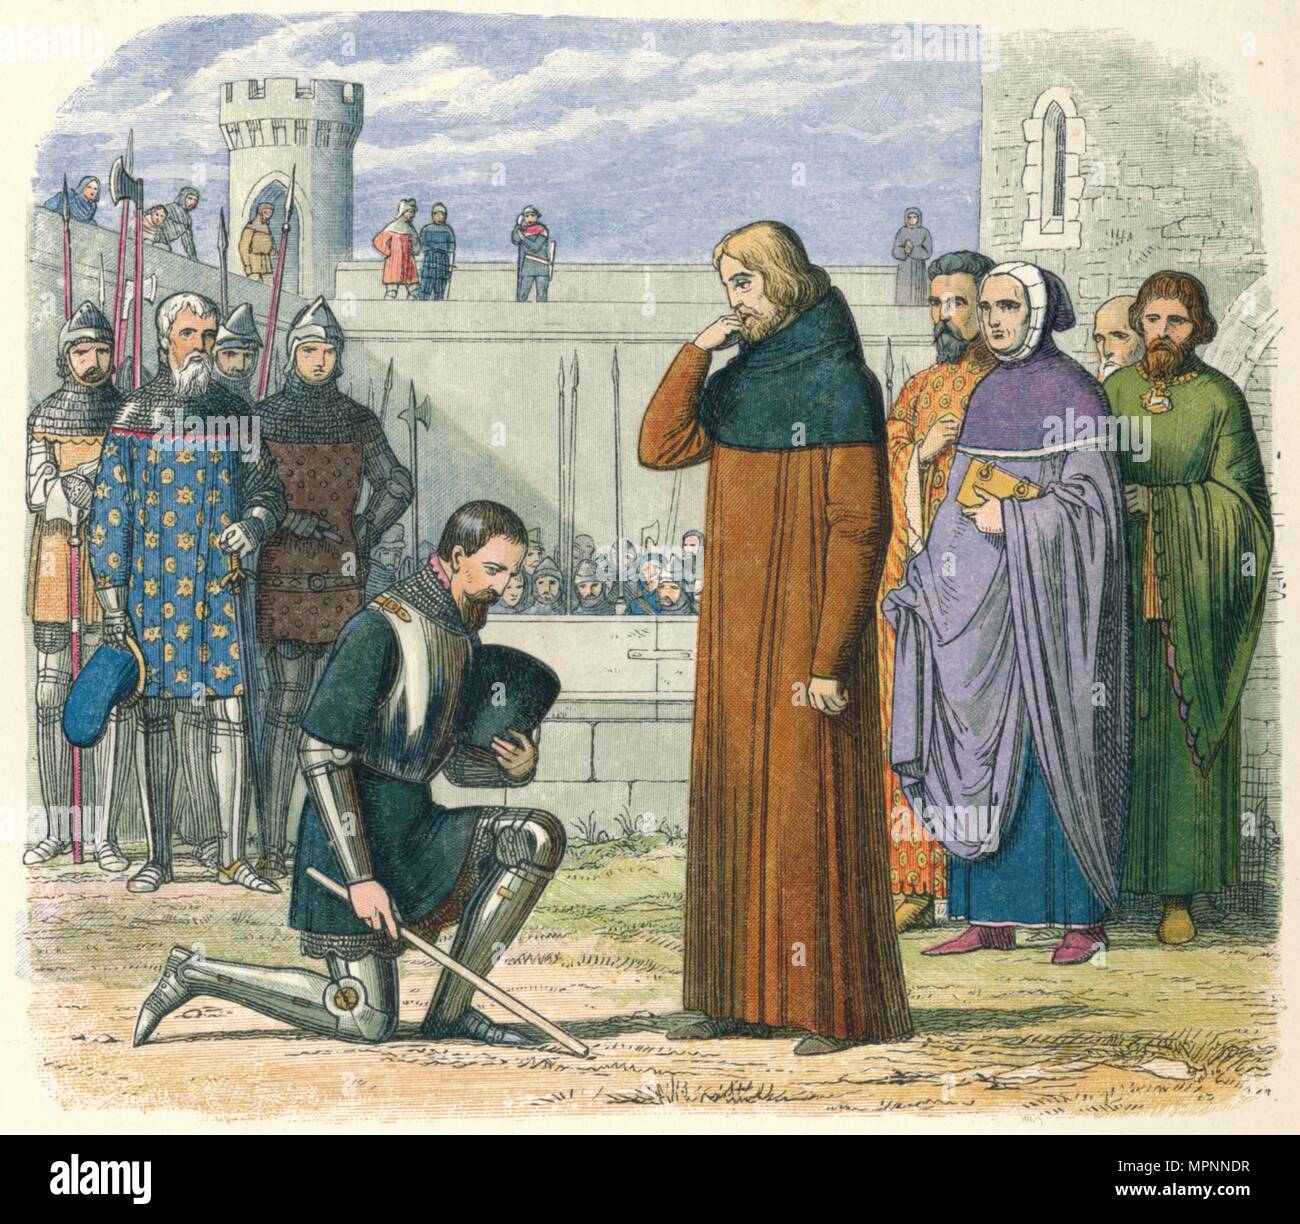 'Meeting von Richard und Henry', 1399 (1864). Artist: James William Edmund Doyle. Stockfoto